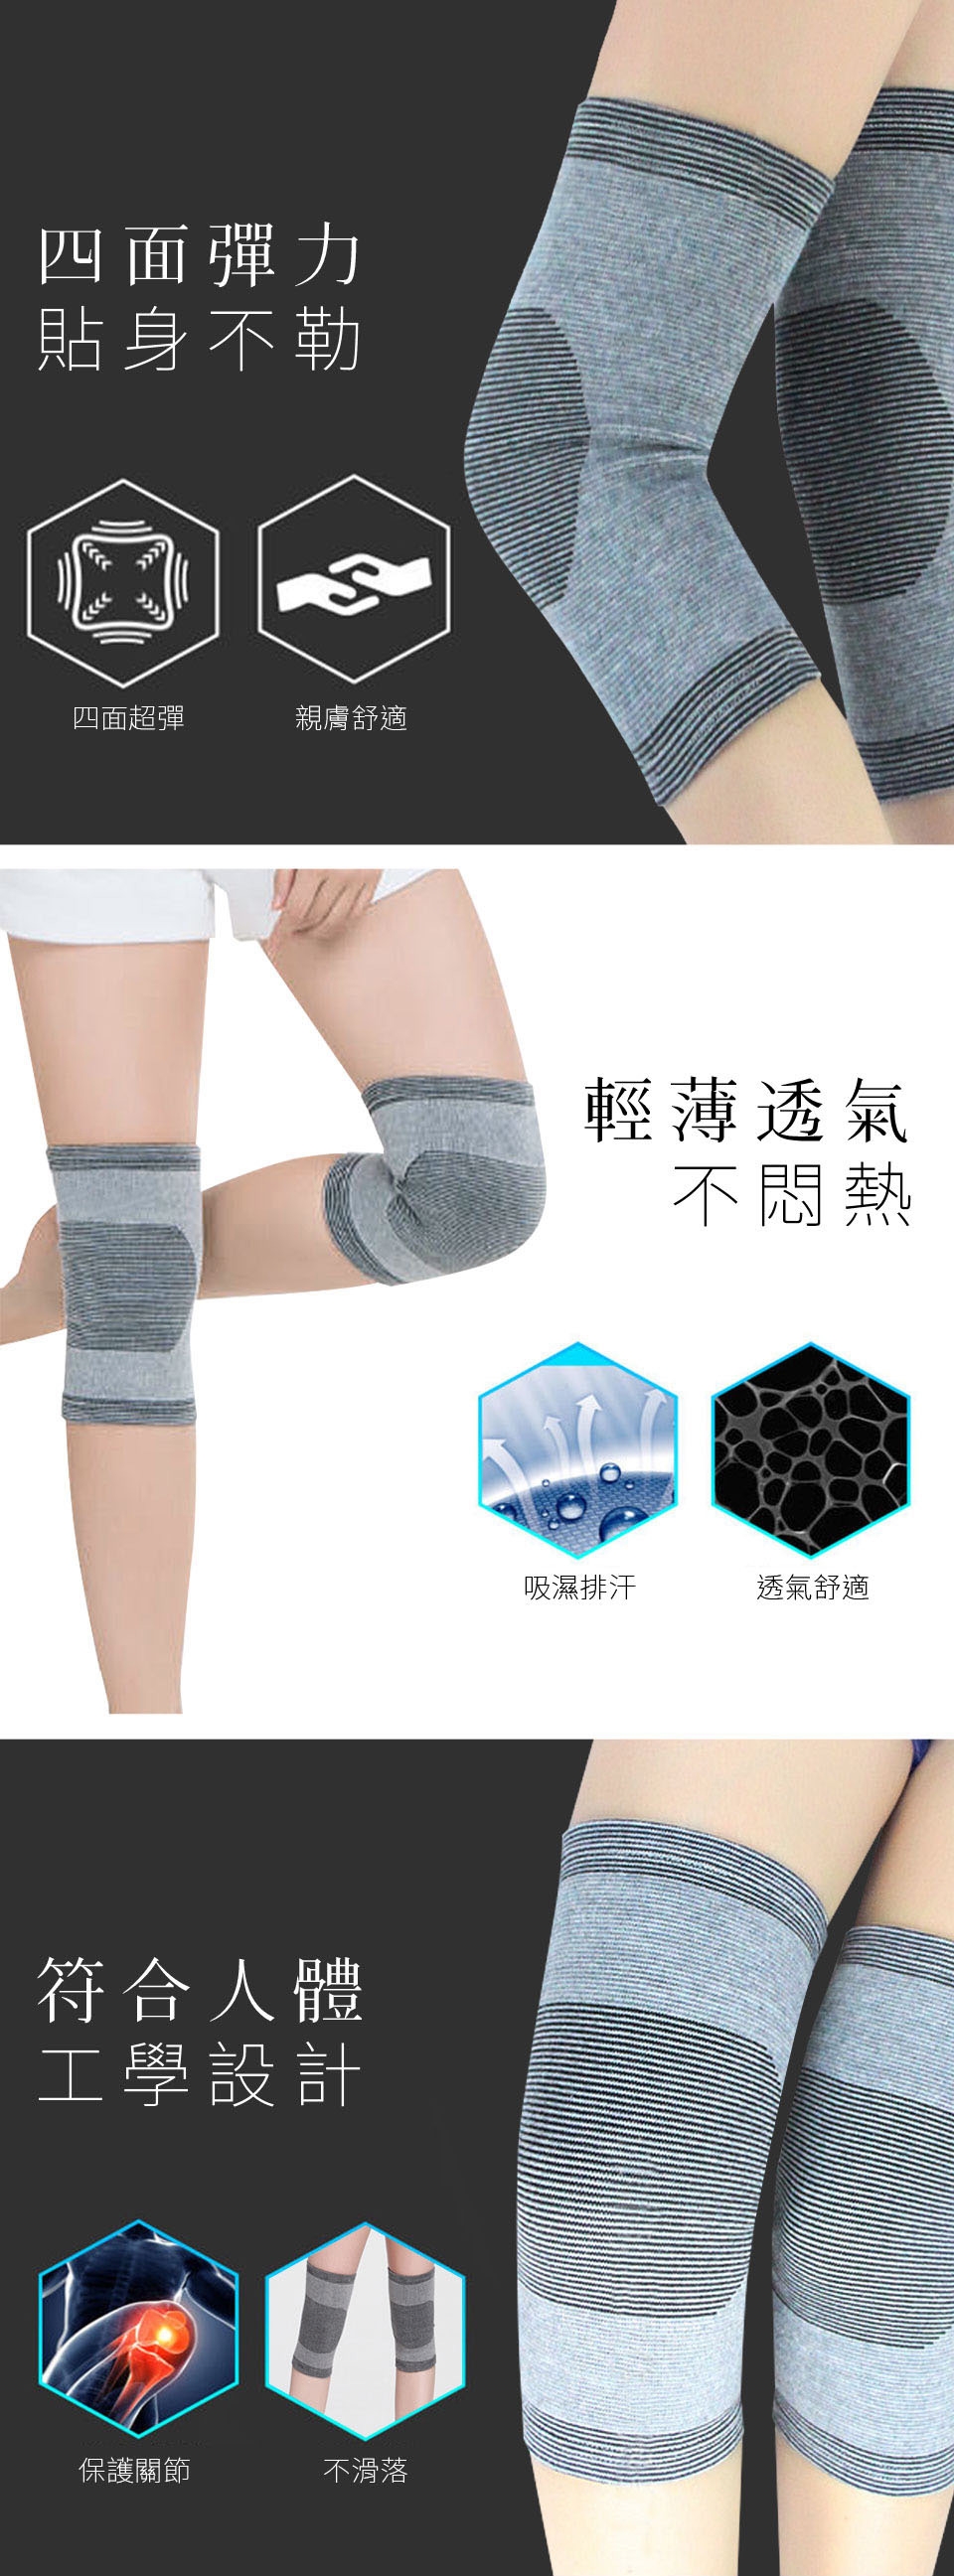 【Yi-sheng】護脊板健康減壓護腰帶超值組(610腰帶*2+CC護膝)